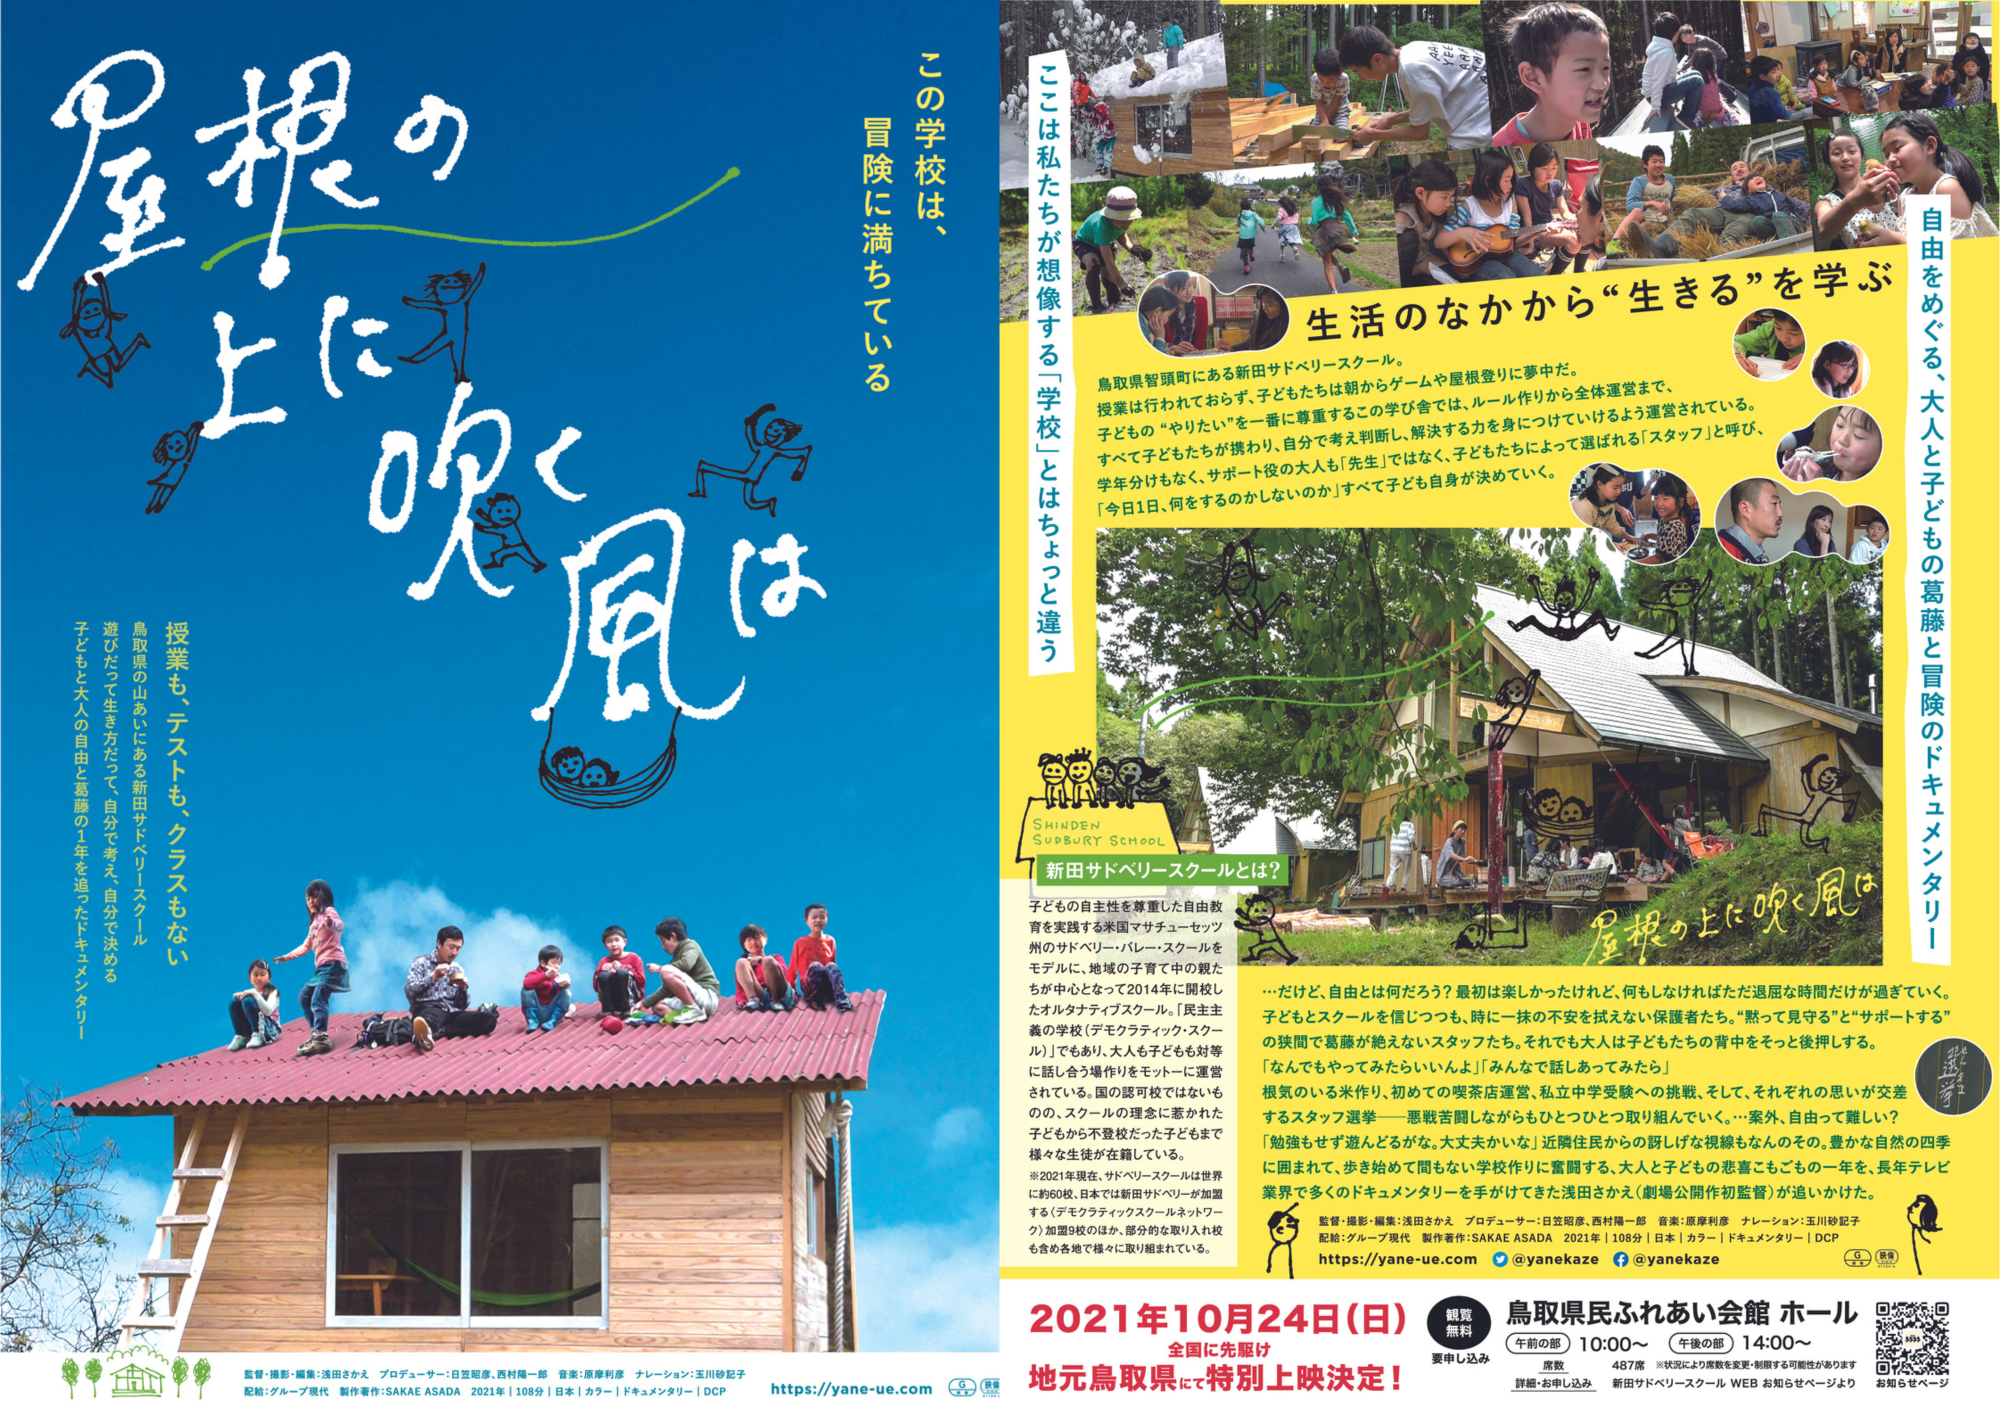 「屋根の上に吹く風は」鳥取上映会チラシ2021年10月21日(日)